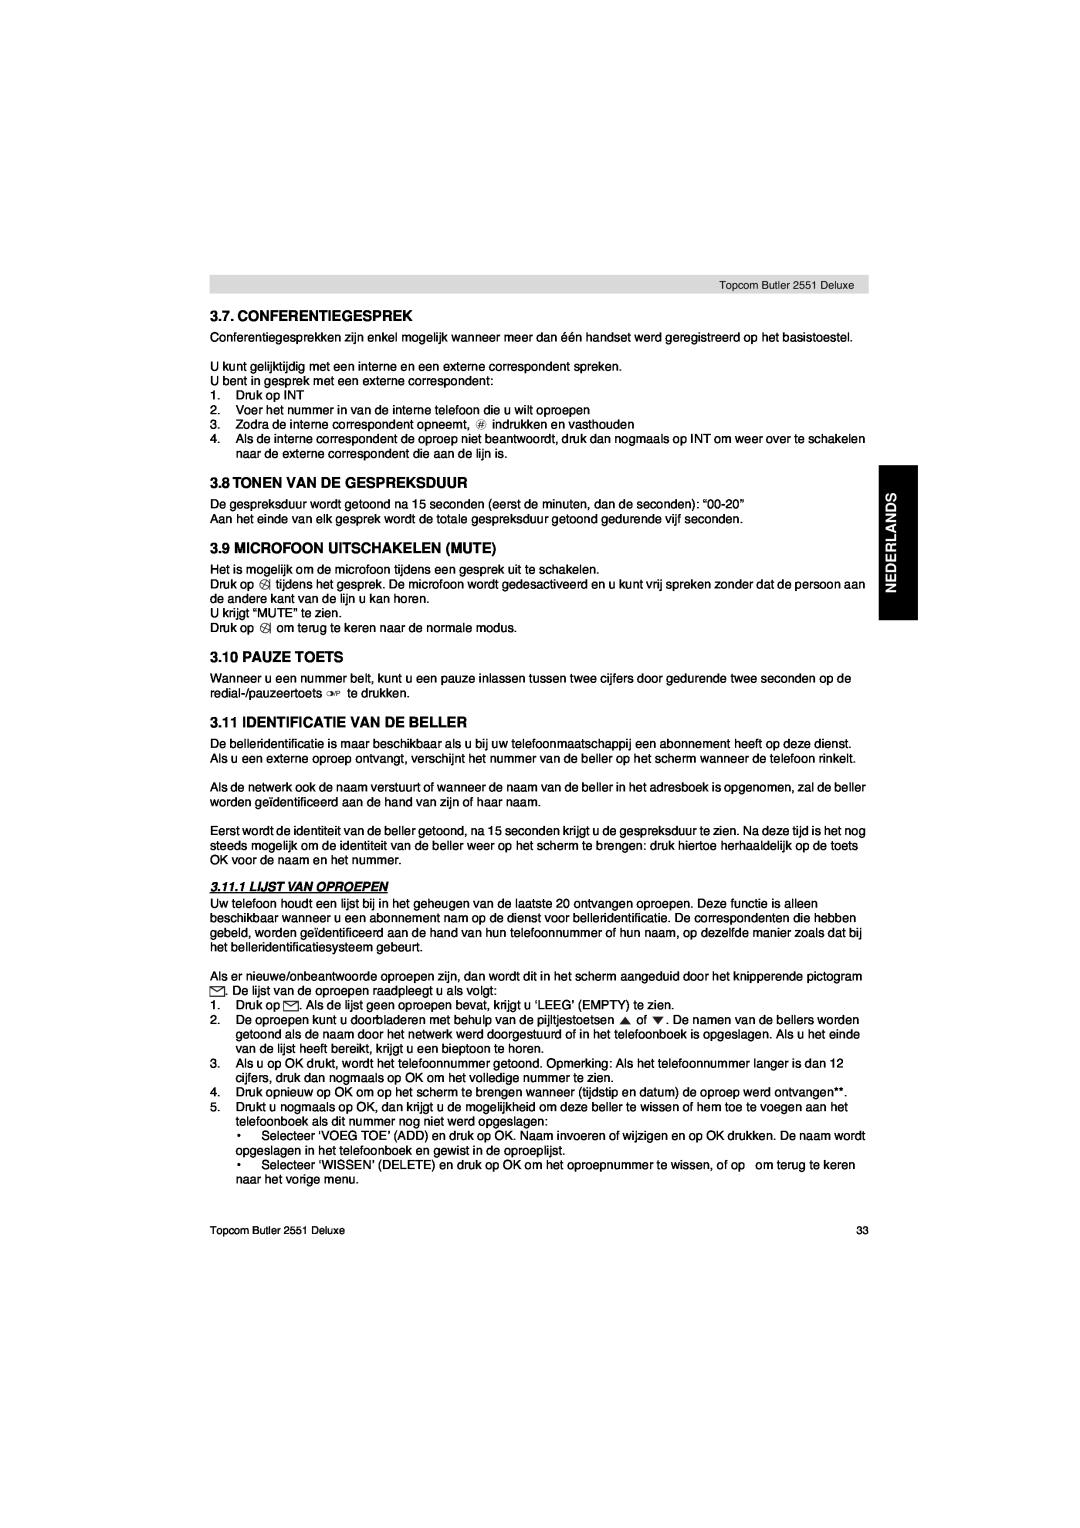 Topcom 2551 manual Conferentiegesprek, Tonen Van De Gespreksduur, Microfoon Uitschakelen Mute, Pauze Toets, Nederlands 